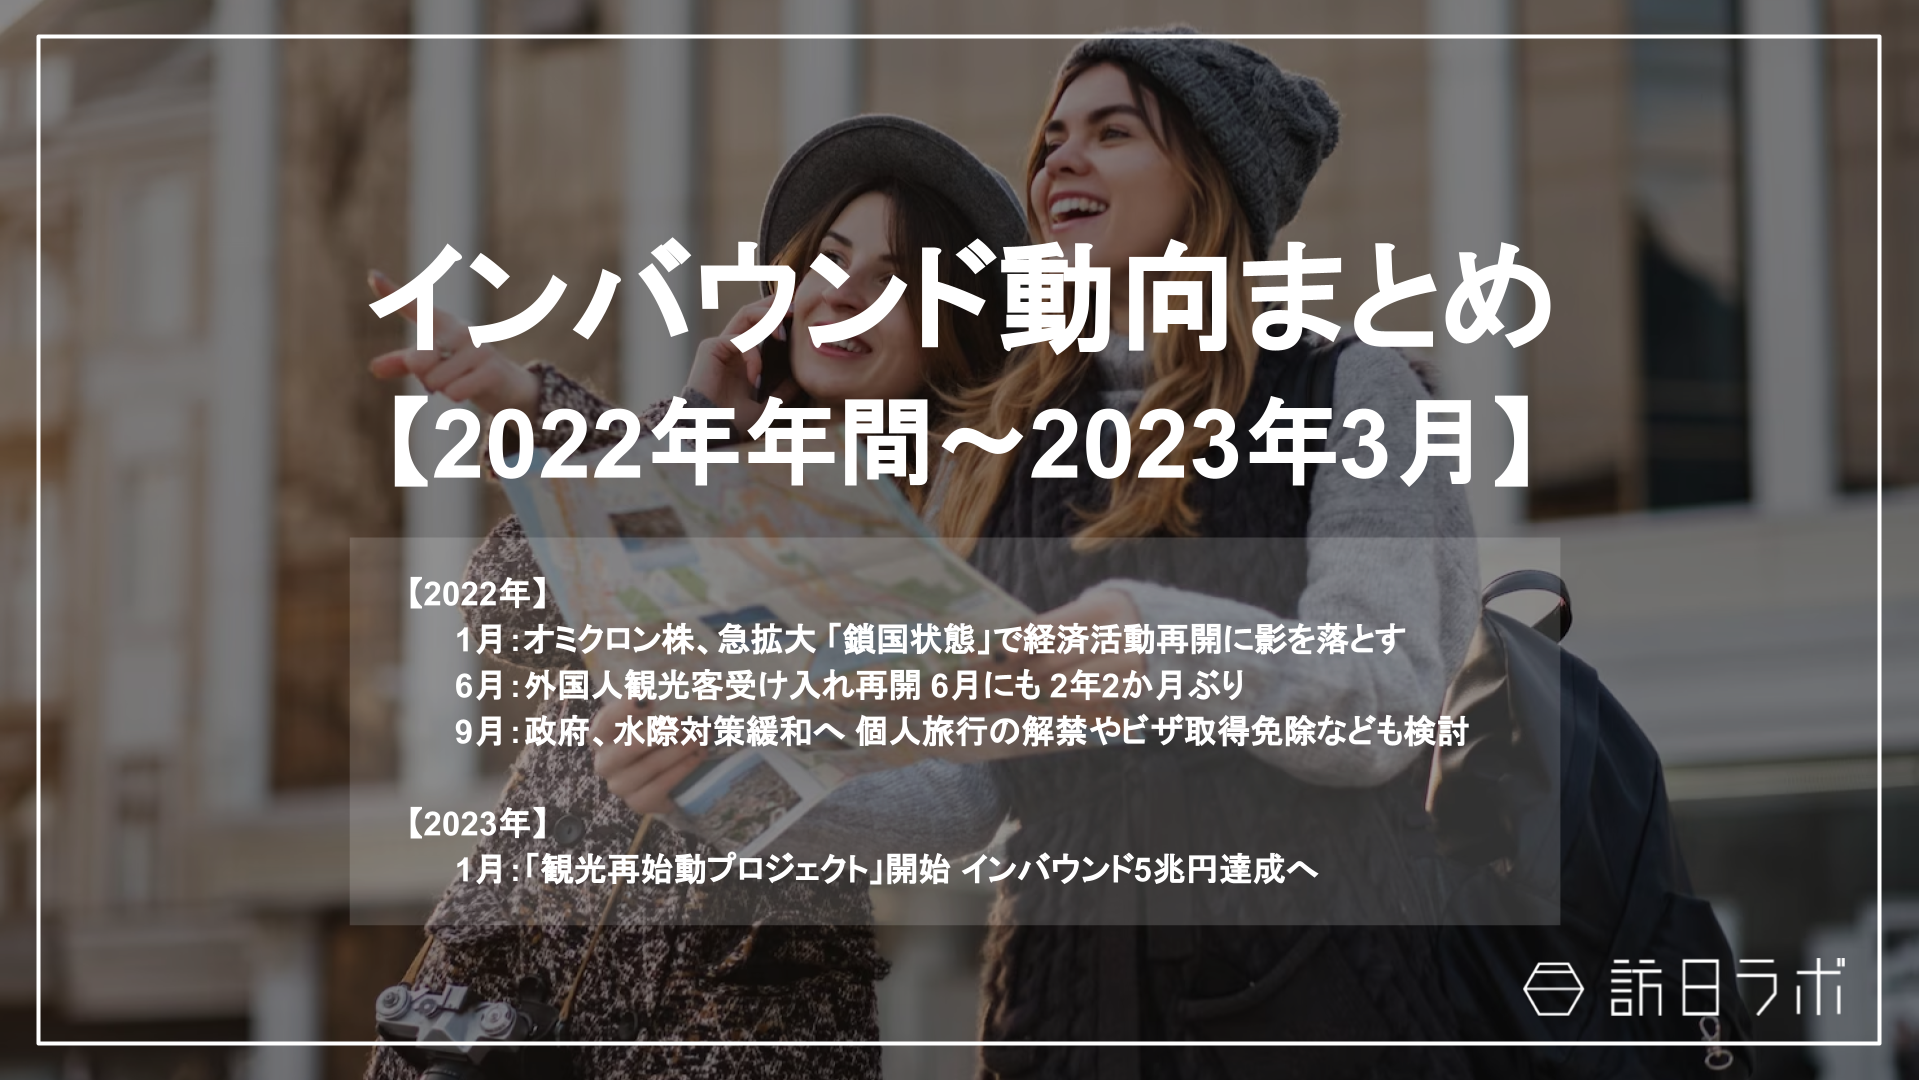 ”外国人観光客受け入れ再開””日本政府、水際対策緩和” 他：2022年の「インバウンドニュース」をおさらい！インバウンド動向まとめ 【2022年年間〜2023年3月】